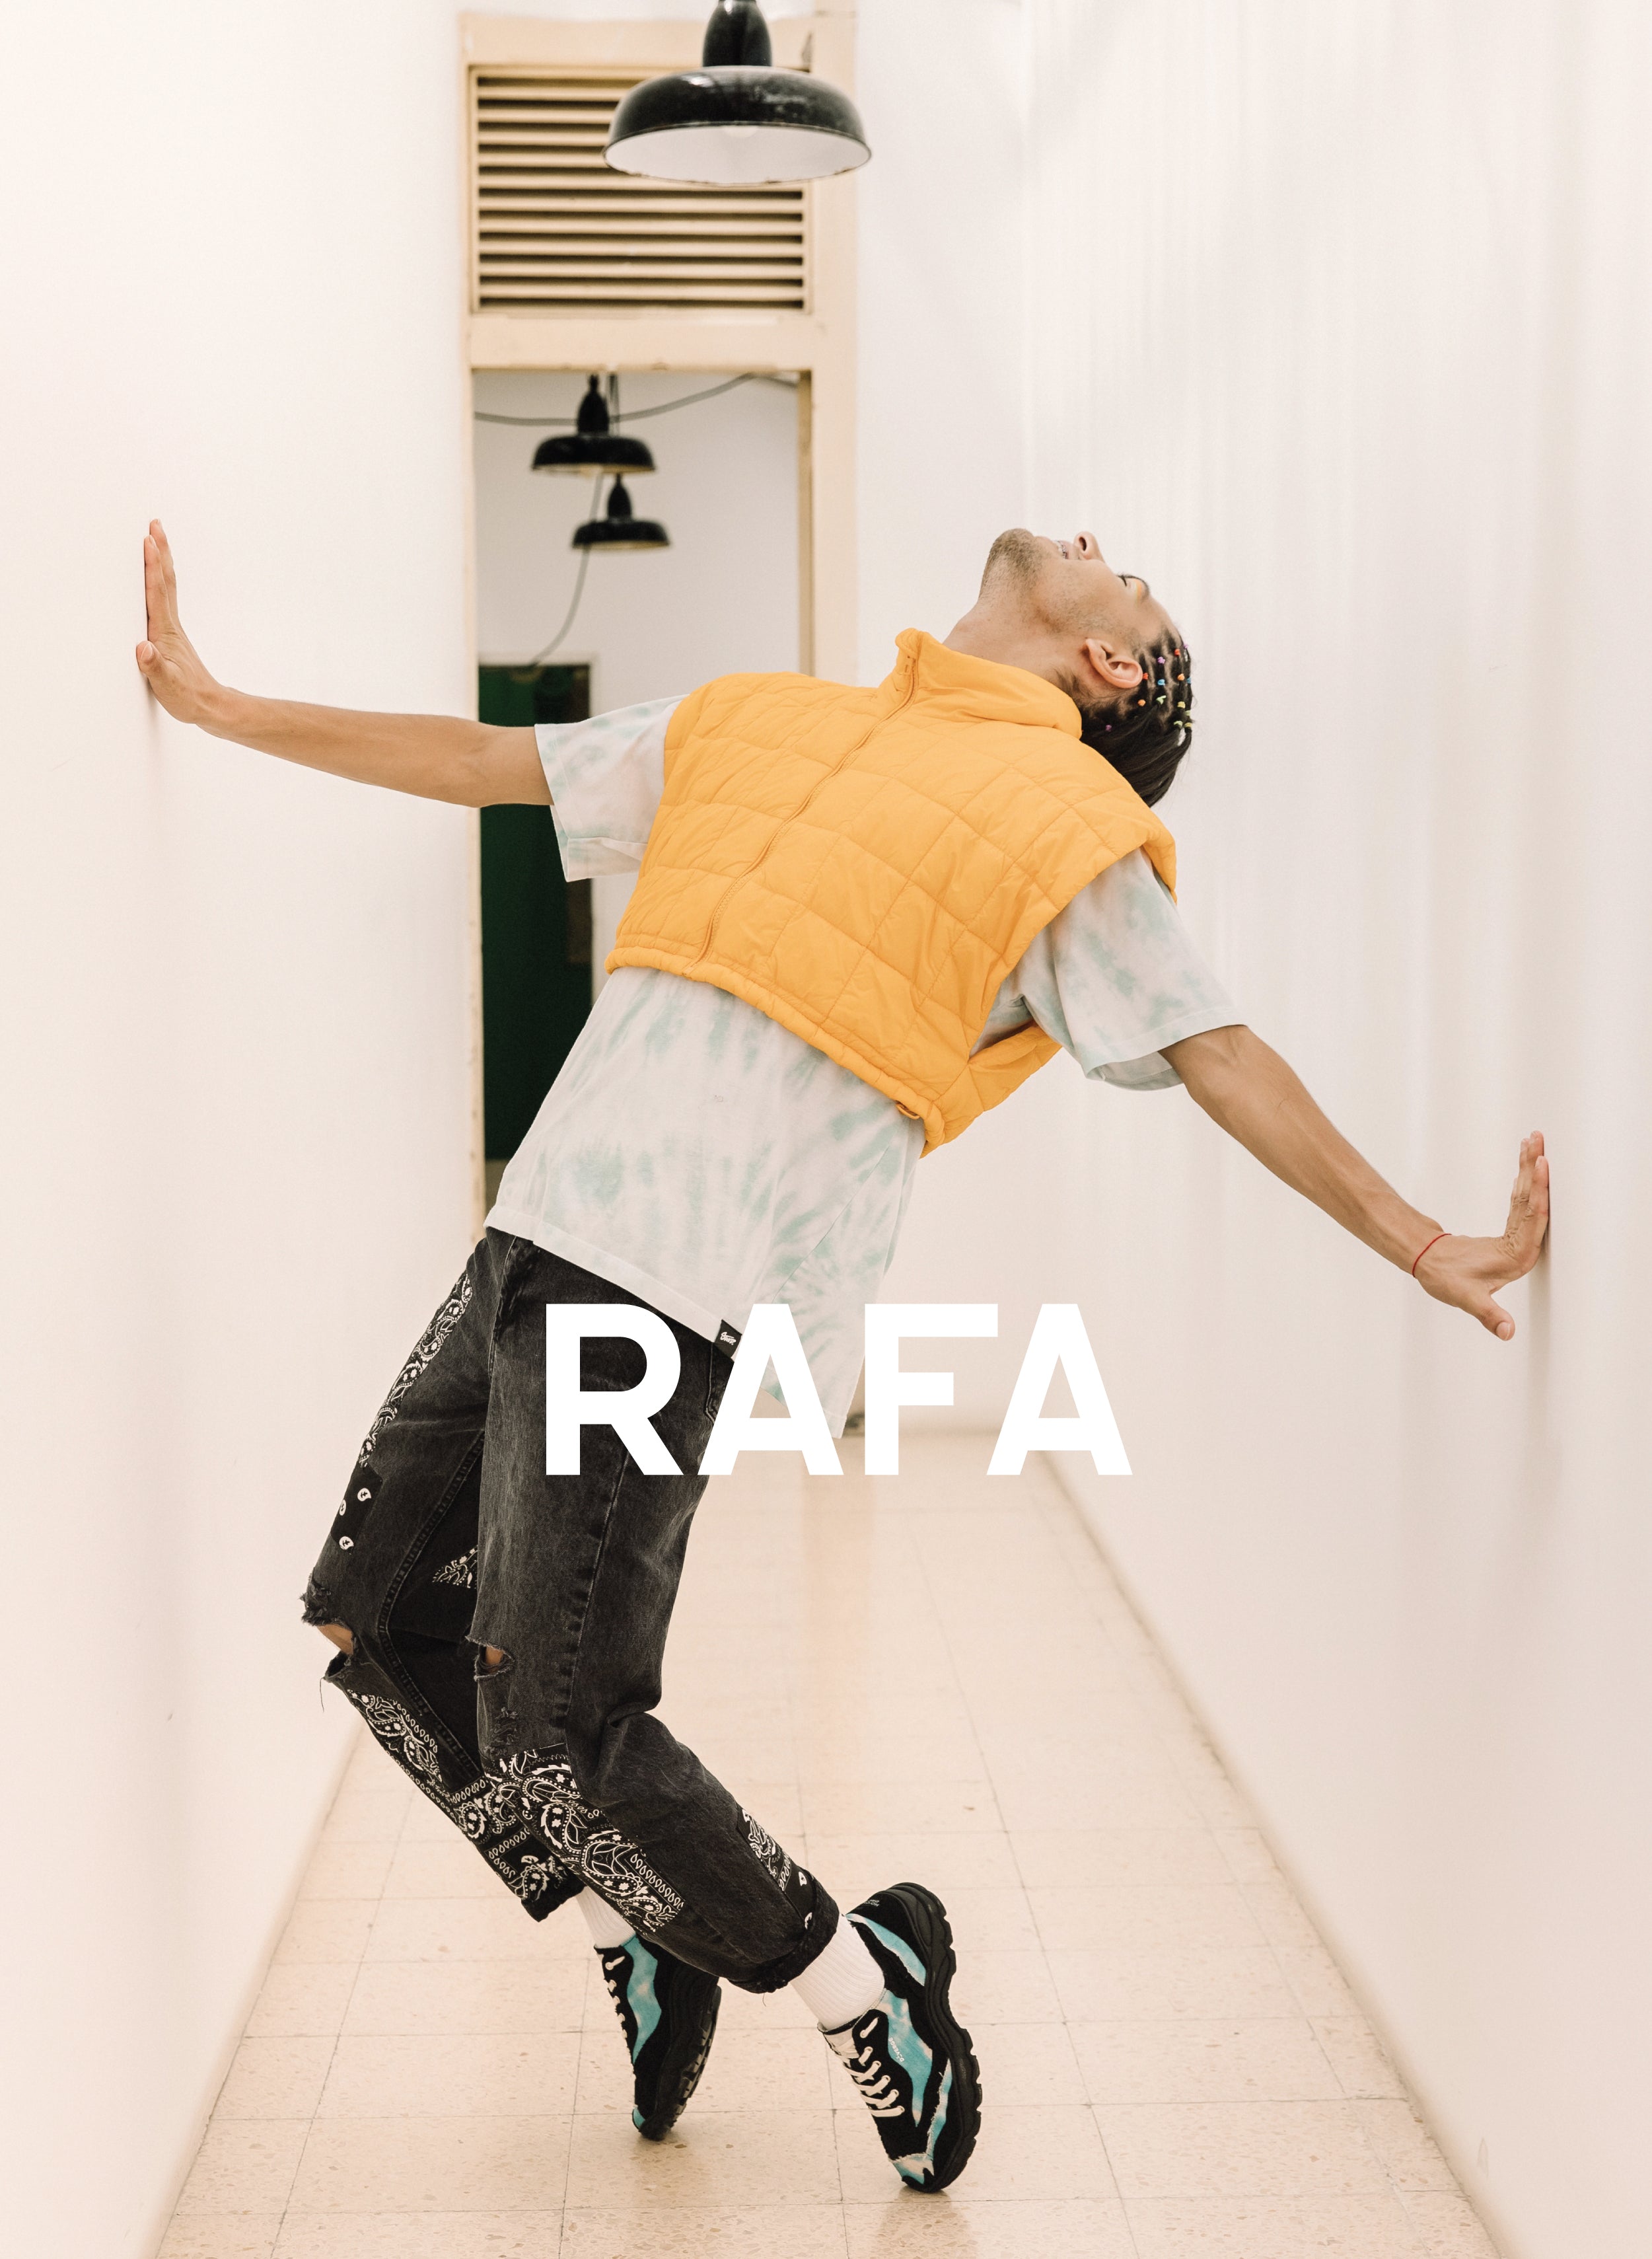 Rafa colgando sobre sus pies, usando Diverge sneakers, promoviendo el impacto social y el calzado personalizado a través del proyecto Imagine.